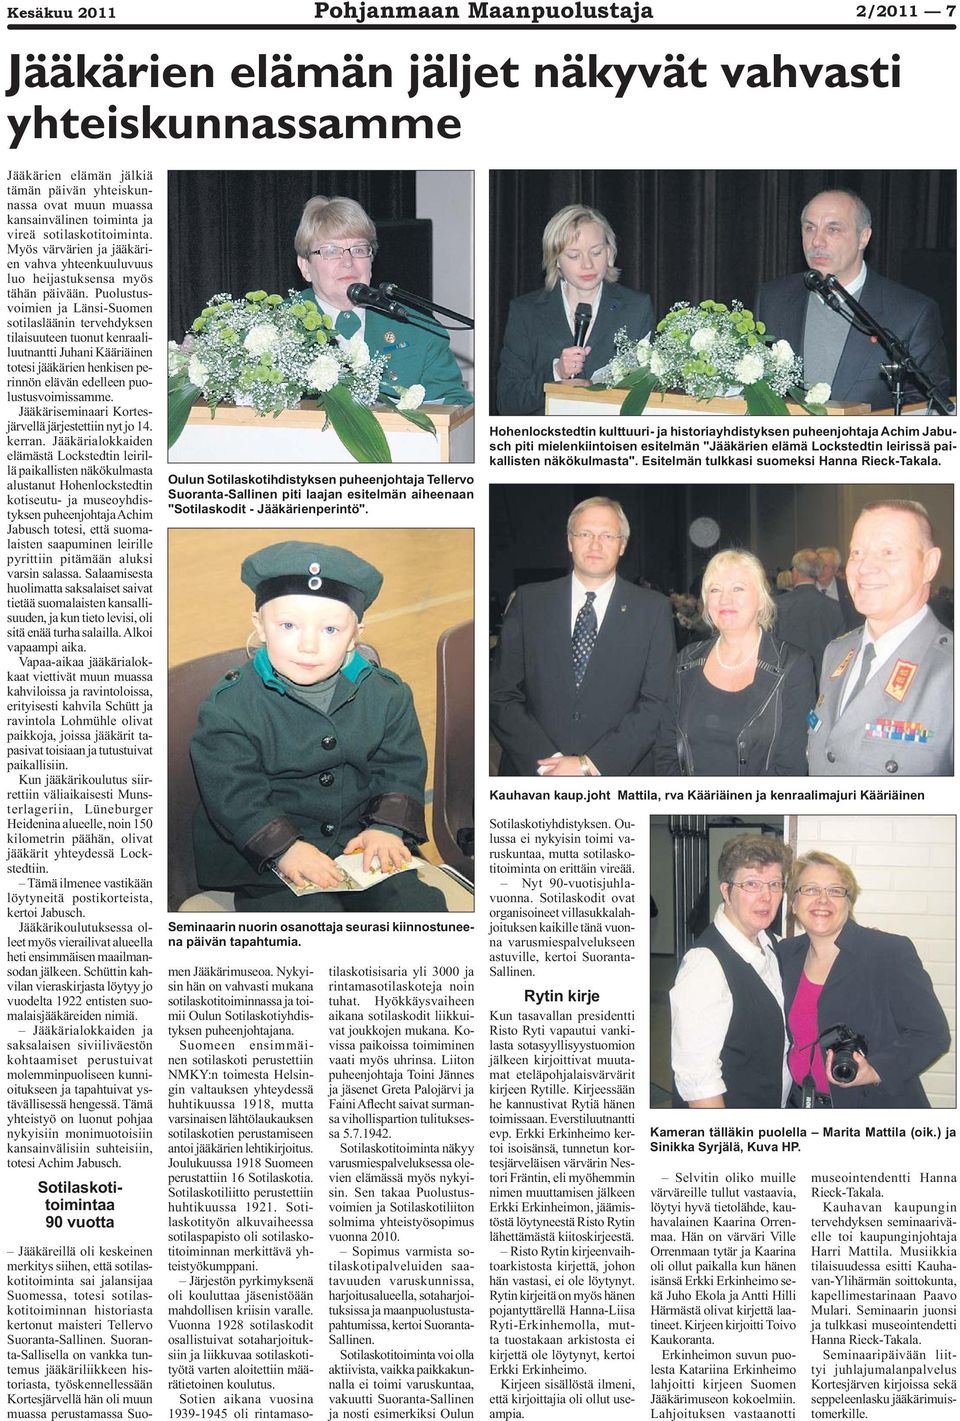 Puolustusvoimien ja Länsi-Suomen sotilasläänin tervehdyksen tilaisuuteen tuonut kenraaliluutnantti Juhani Kääriäinen totesi jääkärien henkisen perinnön elävän edelleen puolustusvoimissamme.